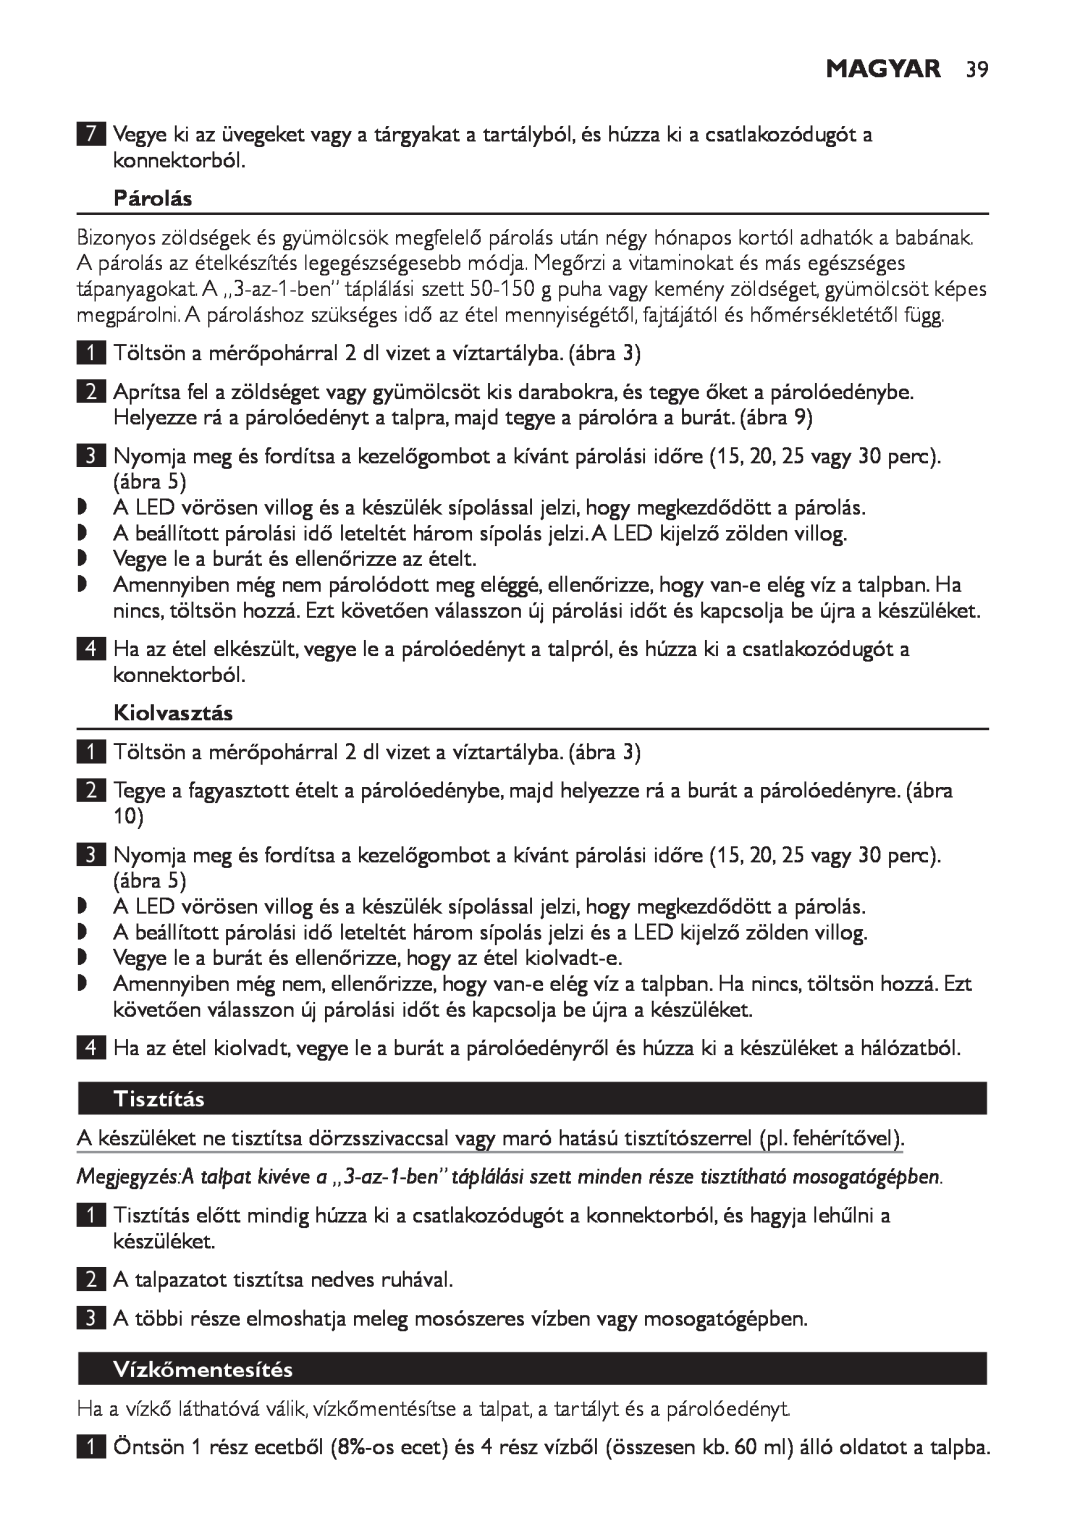 Philips SCF280 manual Párolás, Kiolvasztás, Tisztítás, Vízkőmentesítés, Magyar 